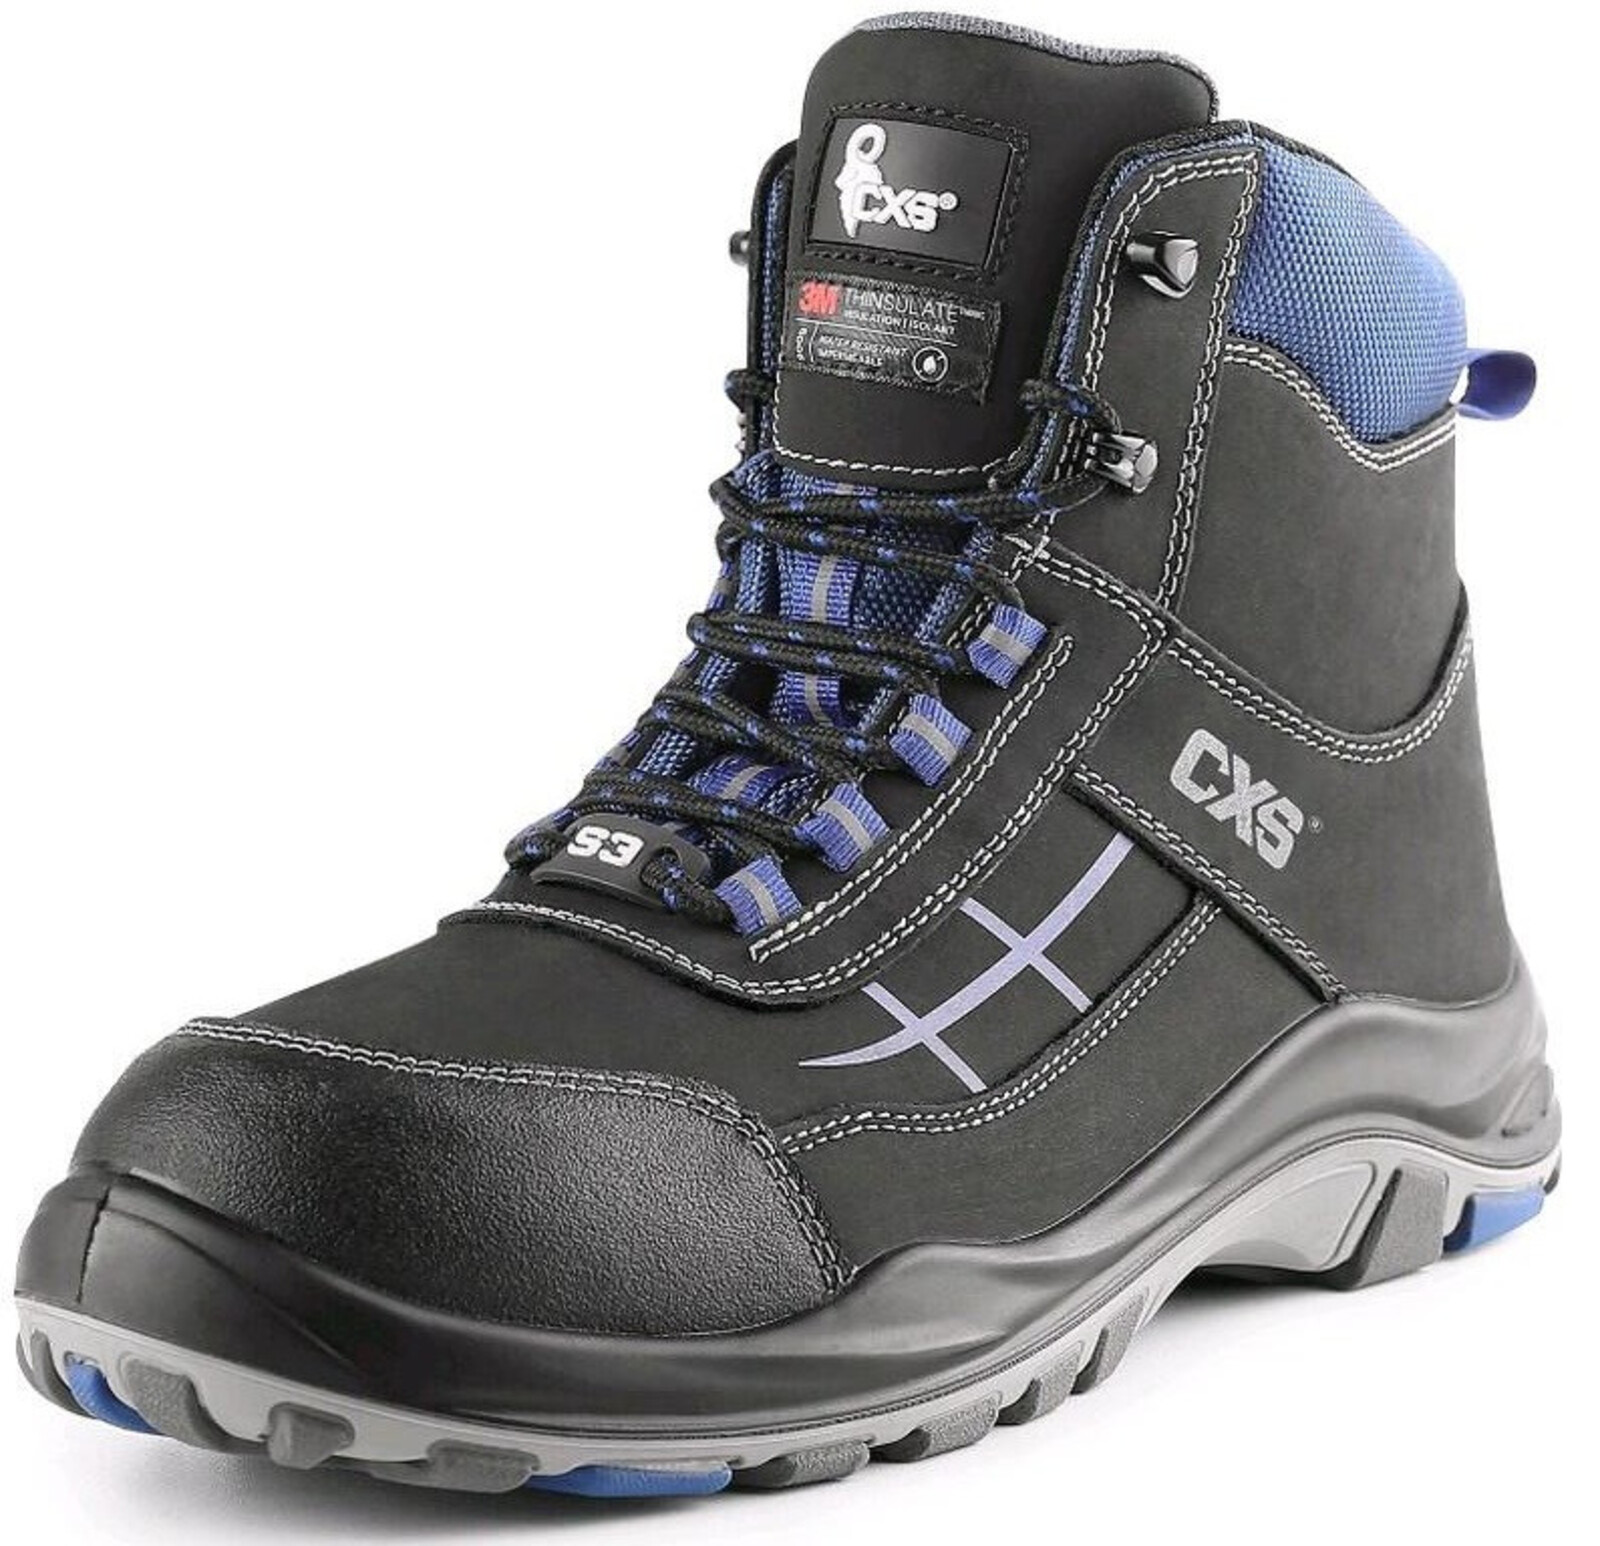 Zateplená bezpečnostná členková obuv CXS Dog Malamute S3 CI SRC - veľkosť: 48, farba: čierna/modrá